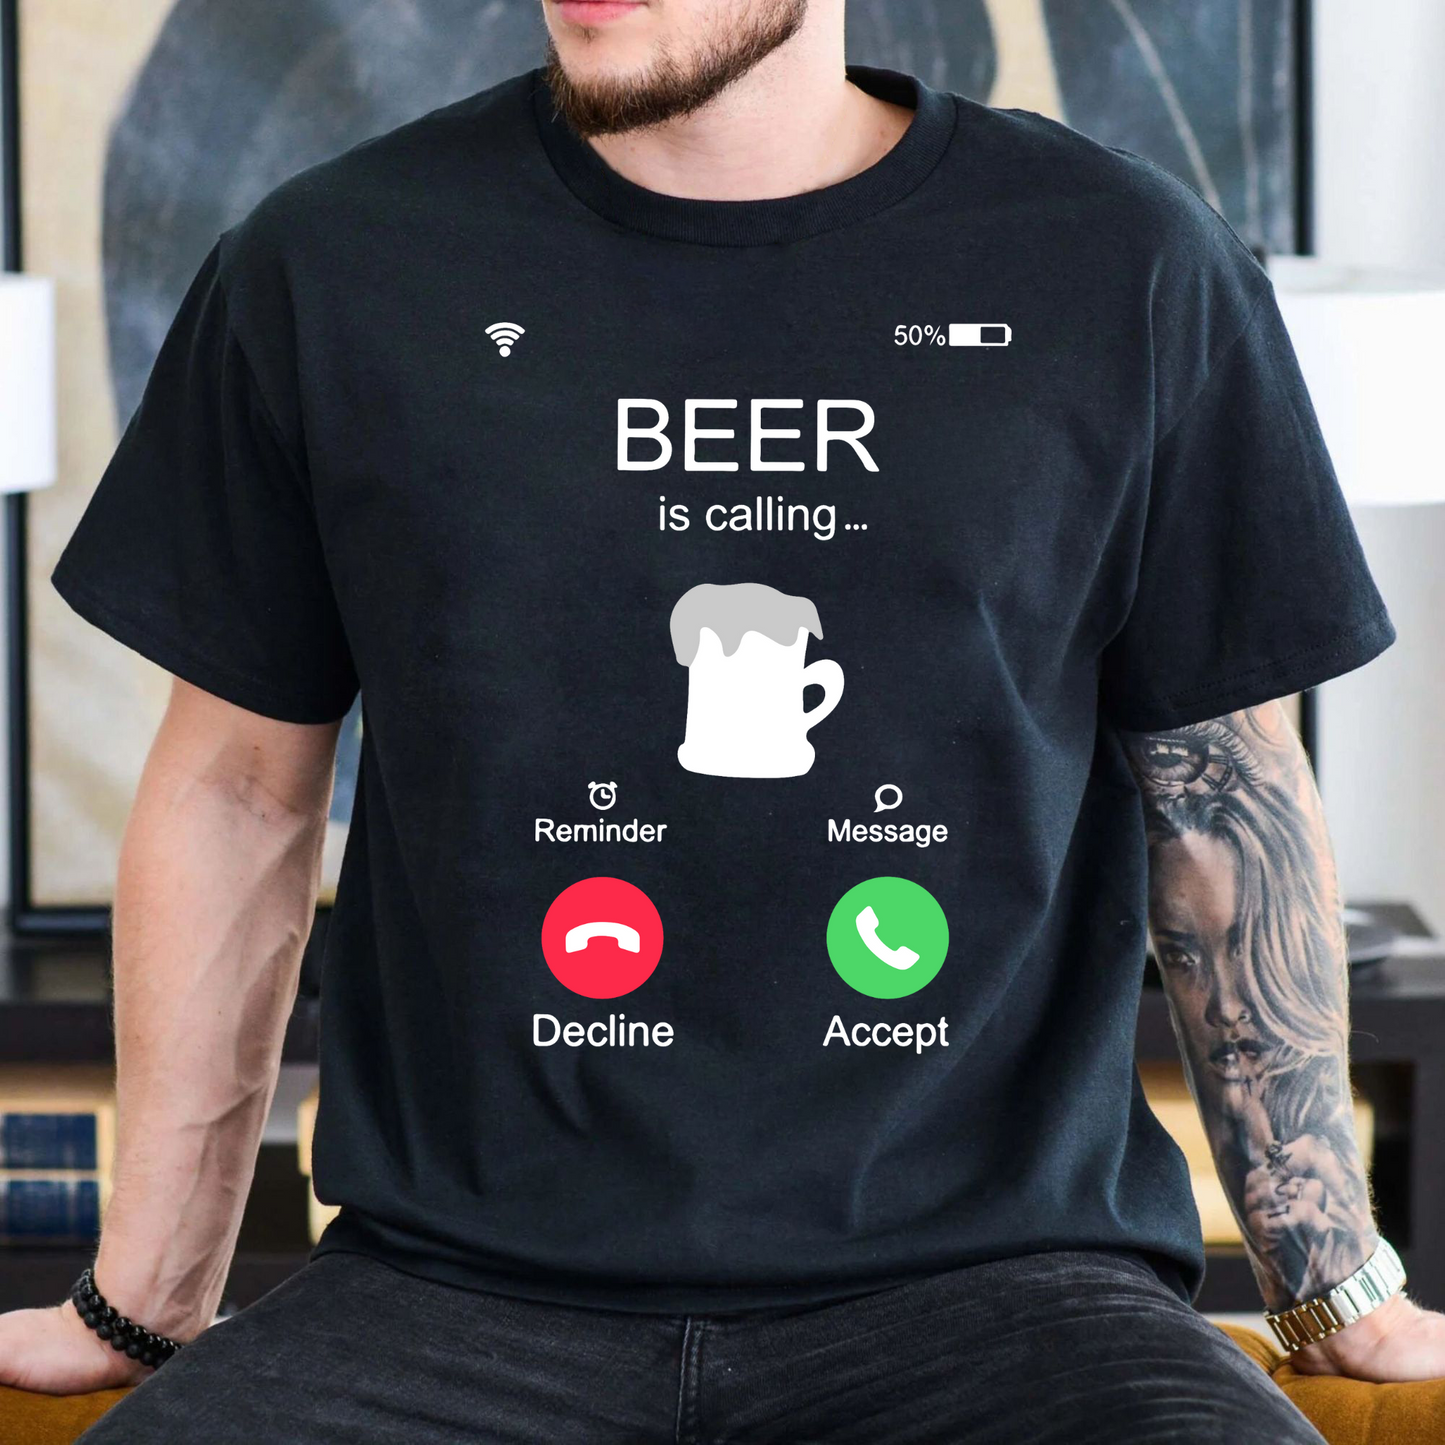 Anruf für Bier - Lustiges T-Shirt für Freizeit und Spaß